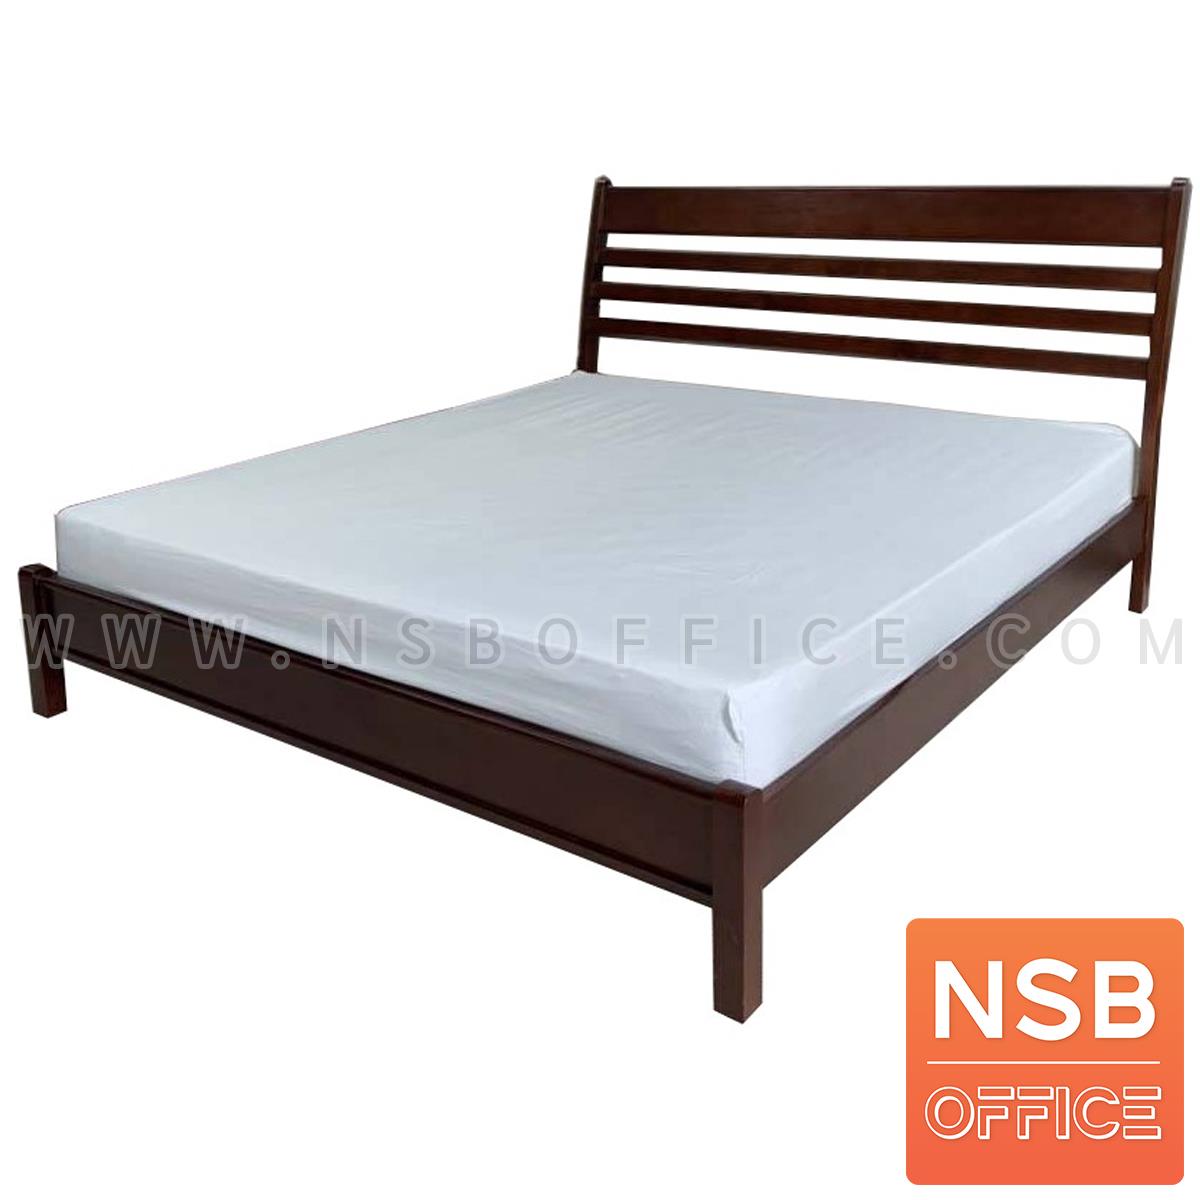 G12A306:เตียงไม้ยางพารา รุ่น PP (พีพี) ขนาด 3.5, 5, 6 ฟุต หัวเตียงไม้